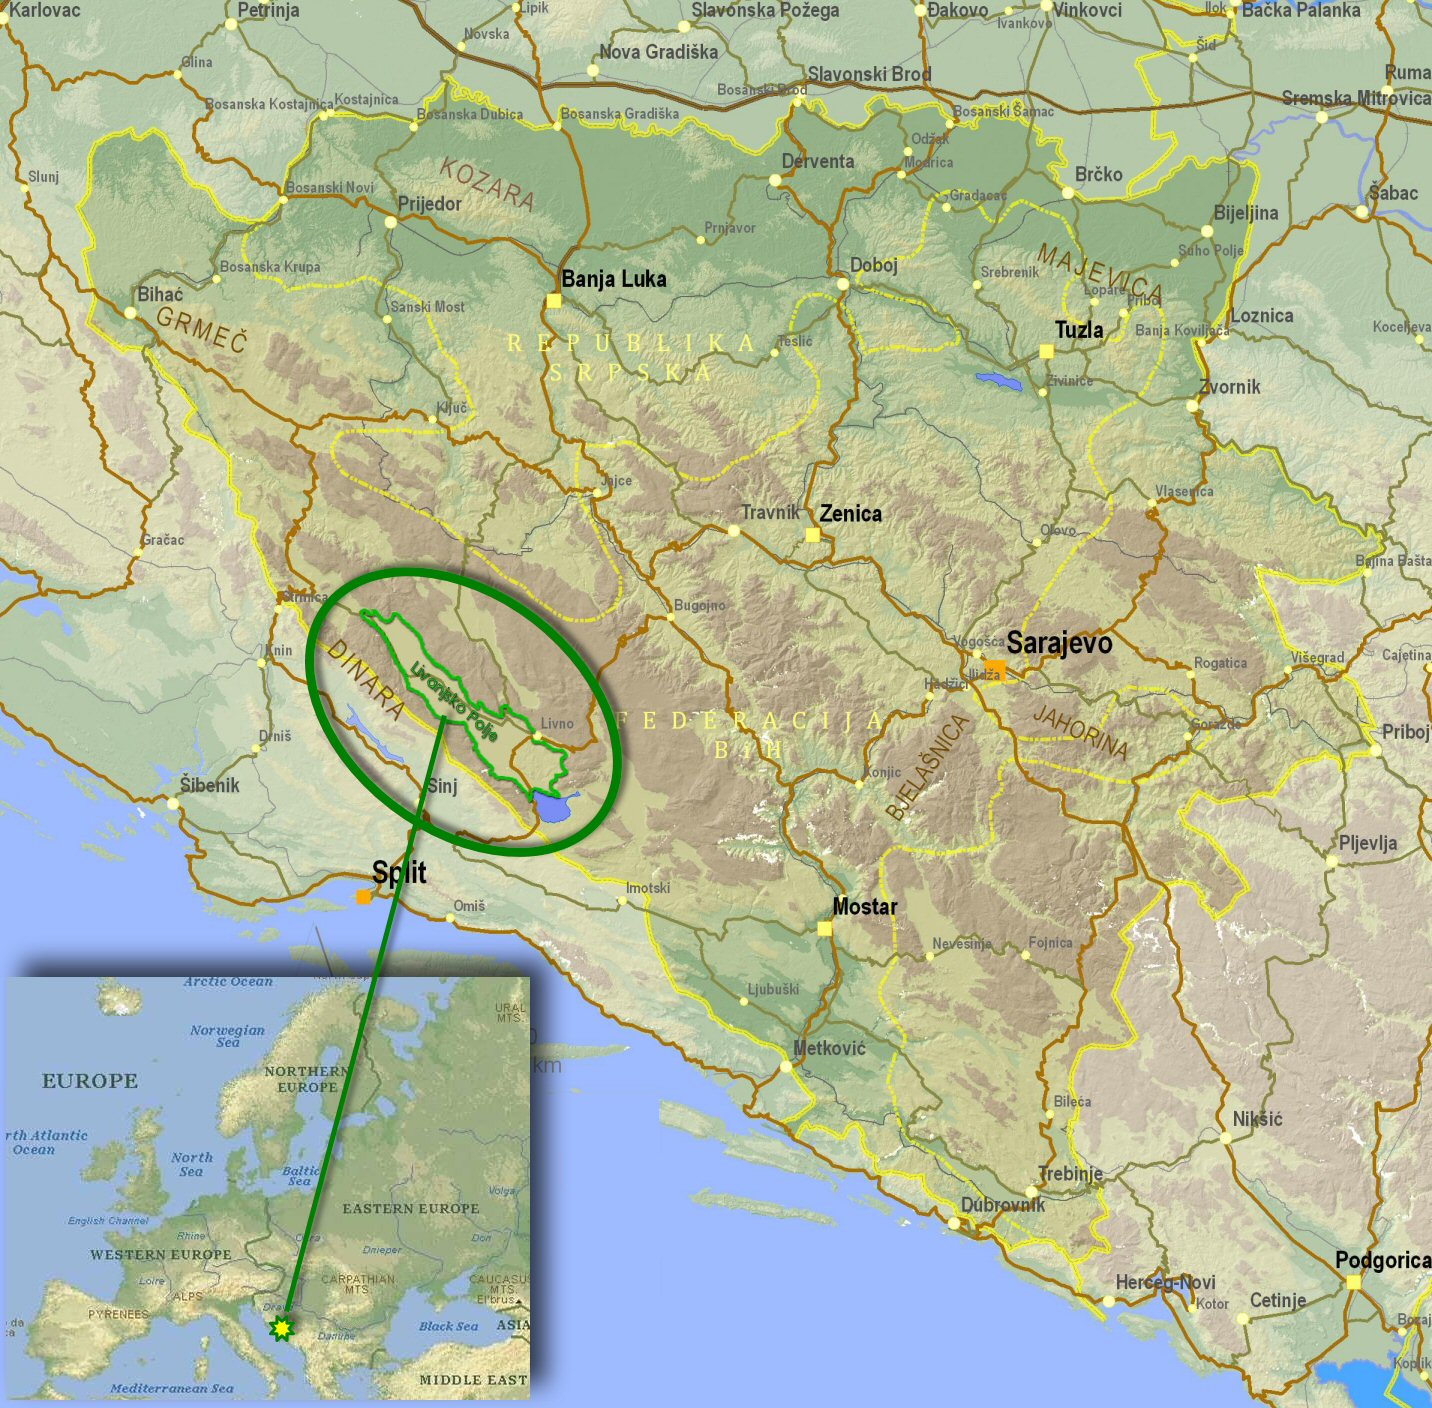 popovo polje karta Image   Livanjsko Polje   General Map of BiH. | Neretva Wiki  popovo polje karta